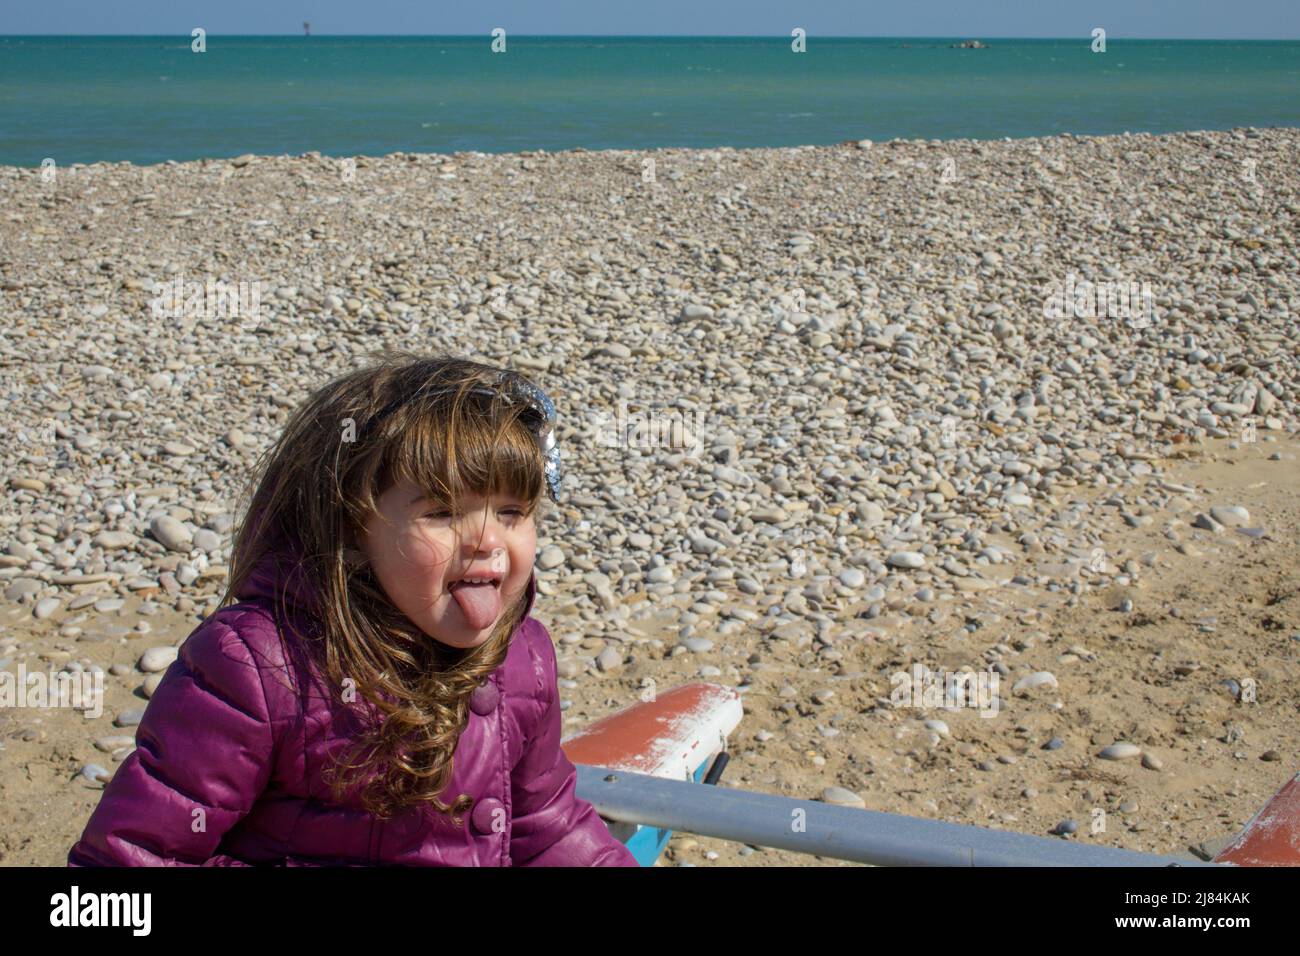 Entzückendes kleines Mädchen, das auf einem Boot am Meer sitzt, während einer Reise nach Italien und dabei spielt, Gesichter zu machen. Stockfoto